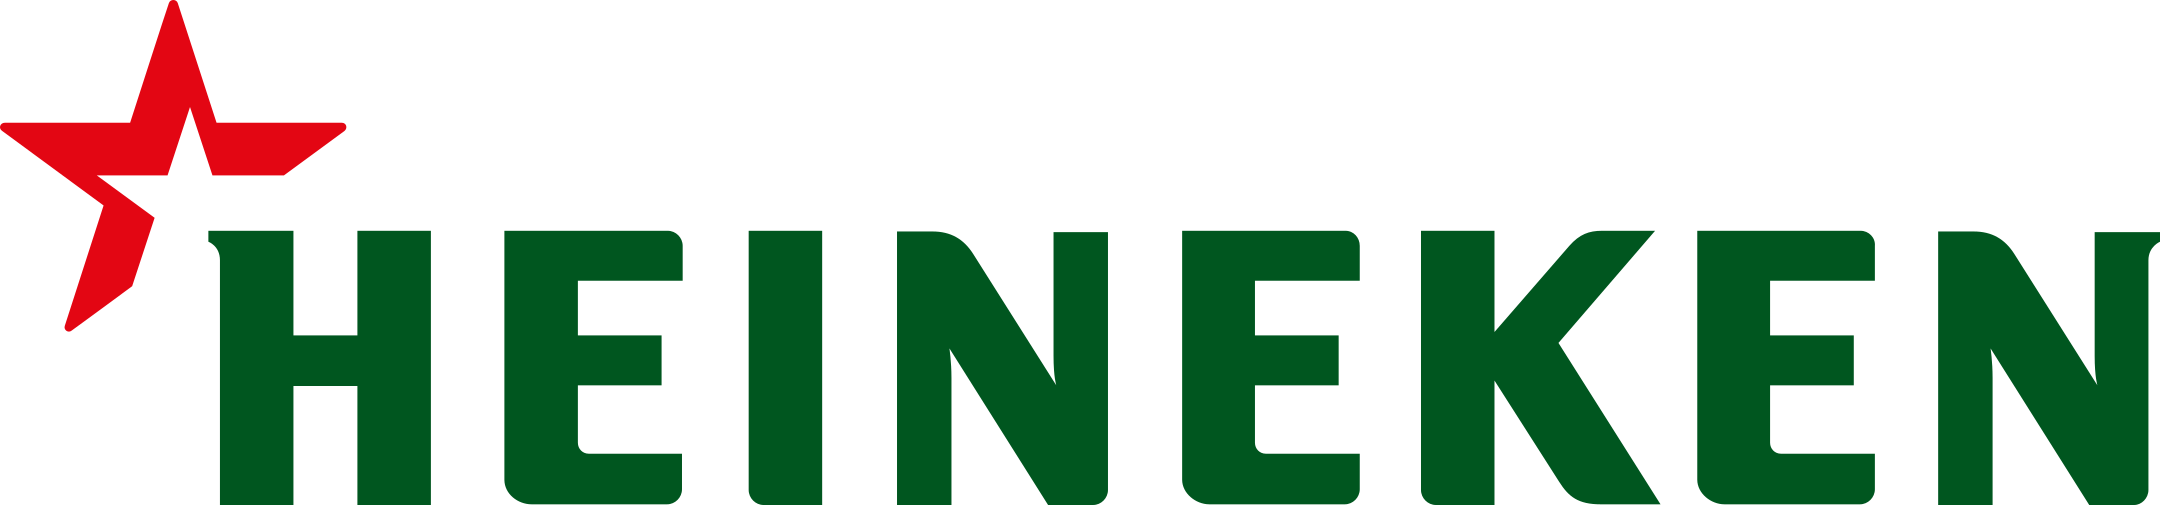 Heineken Company Logo.